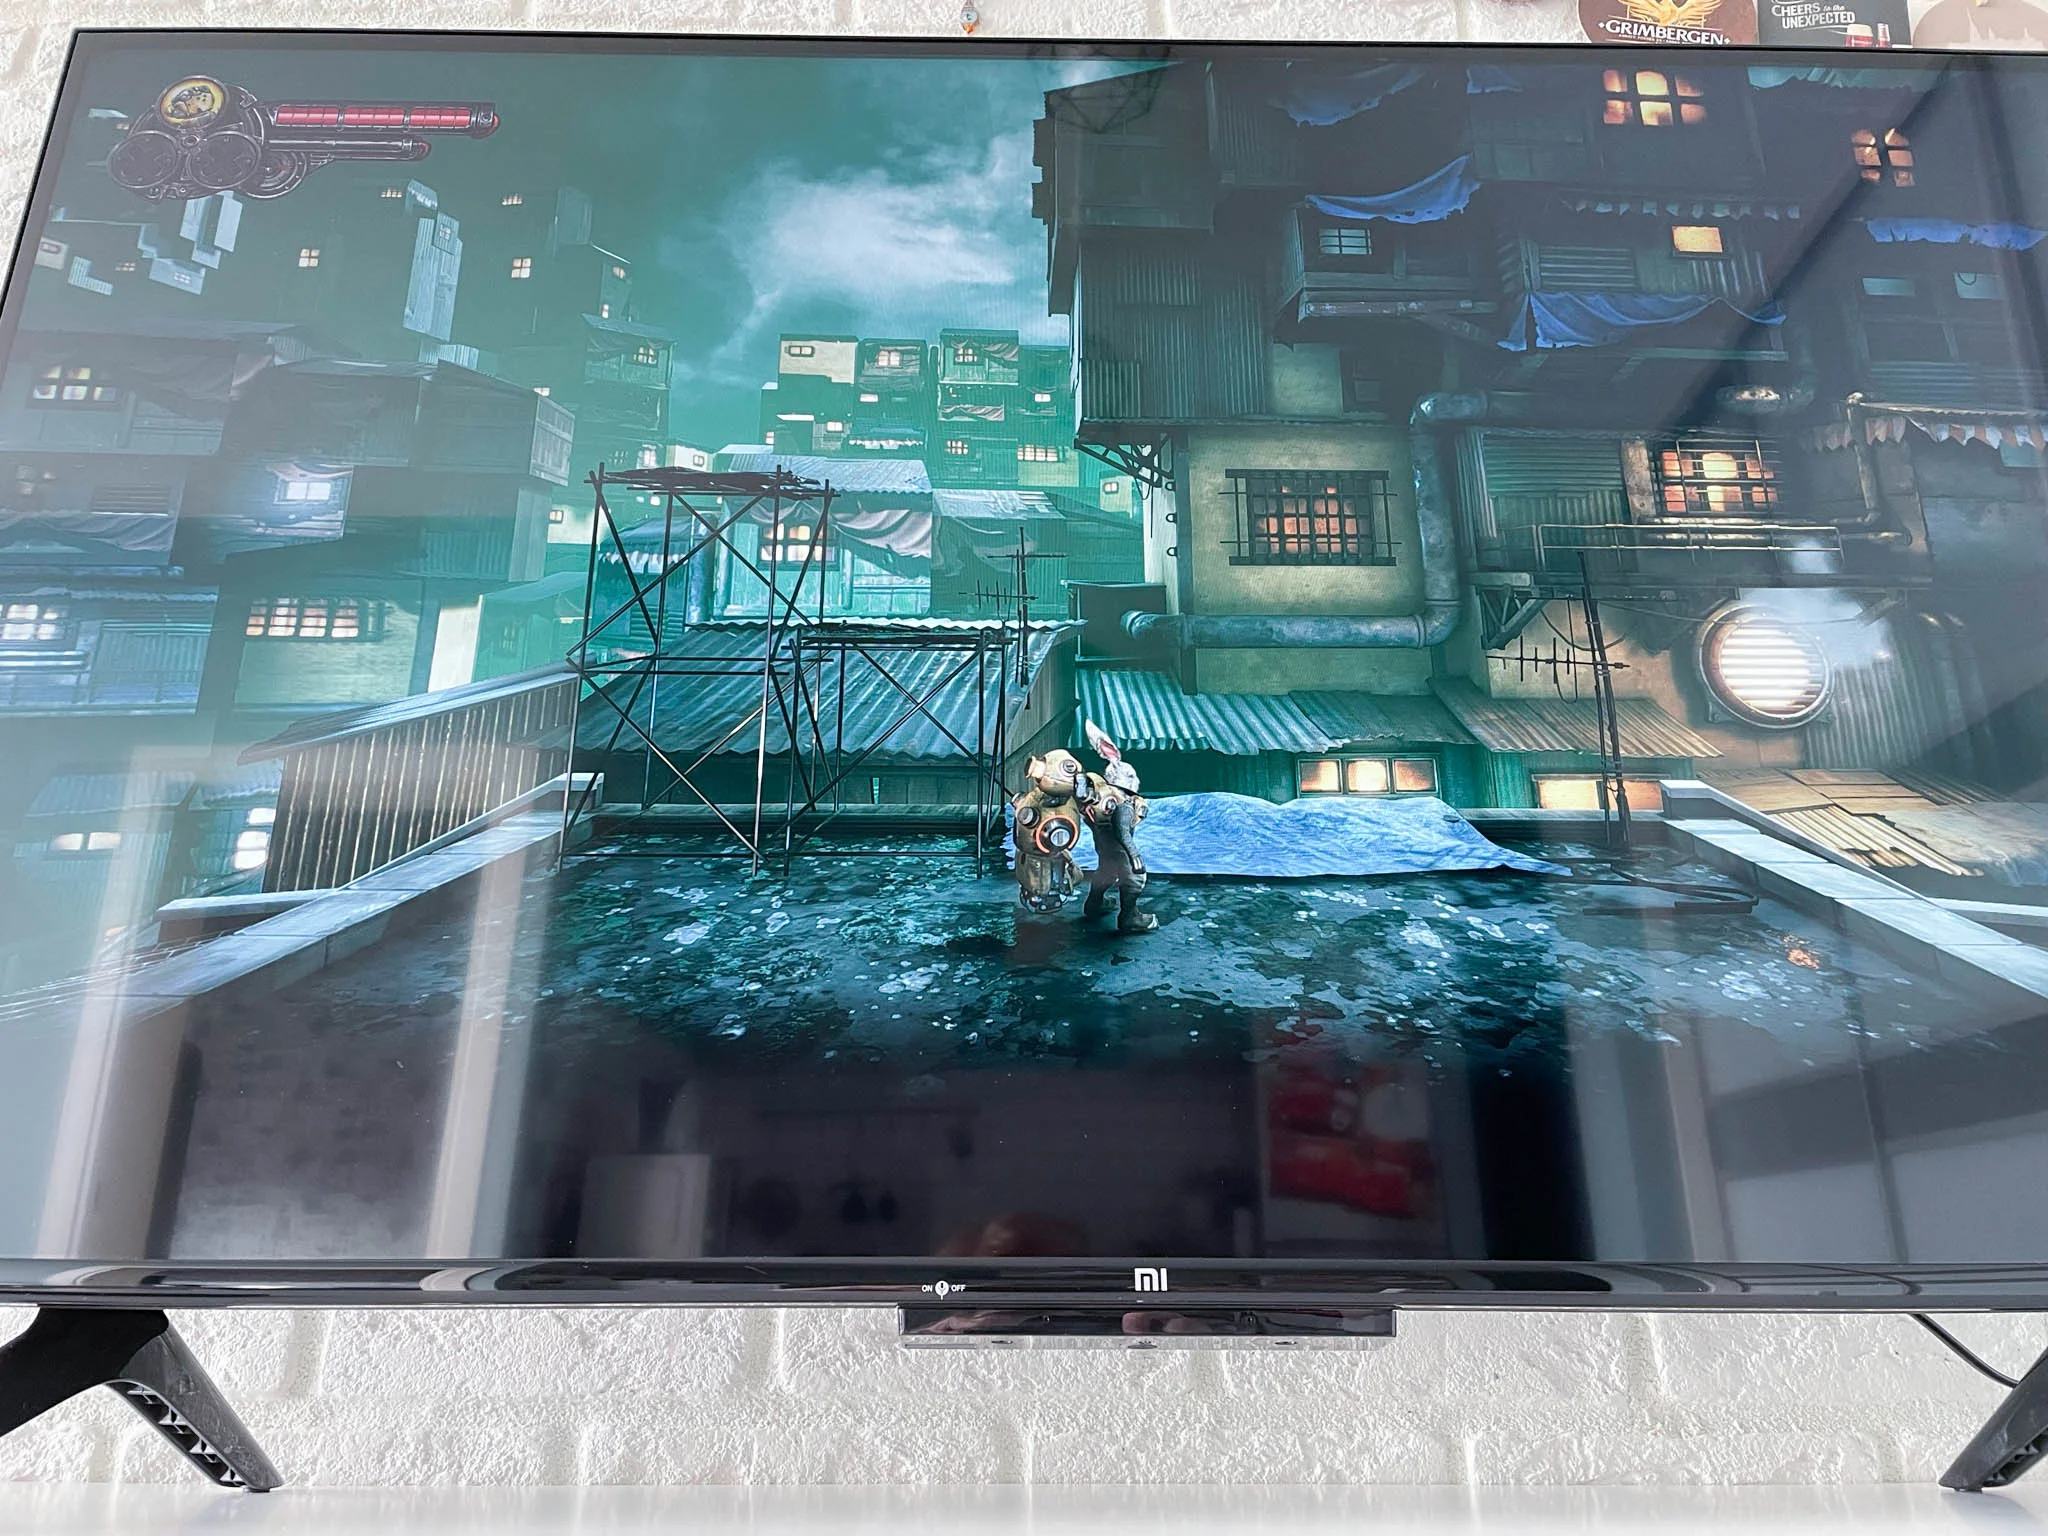 Обзор Xiaomi Mi TV P1: бюджетный 43-дюймовый 4К-телевизор для игр и кино - фото 9